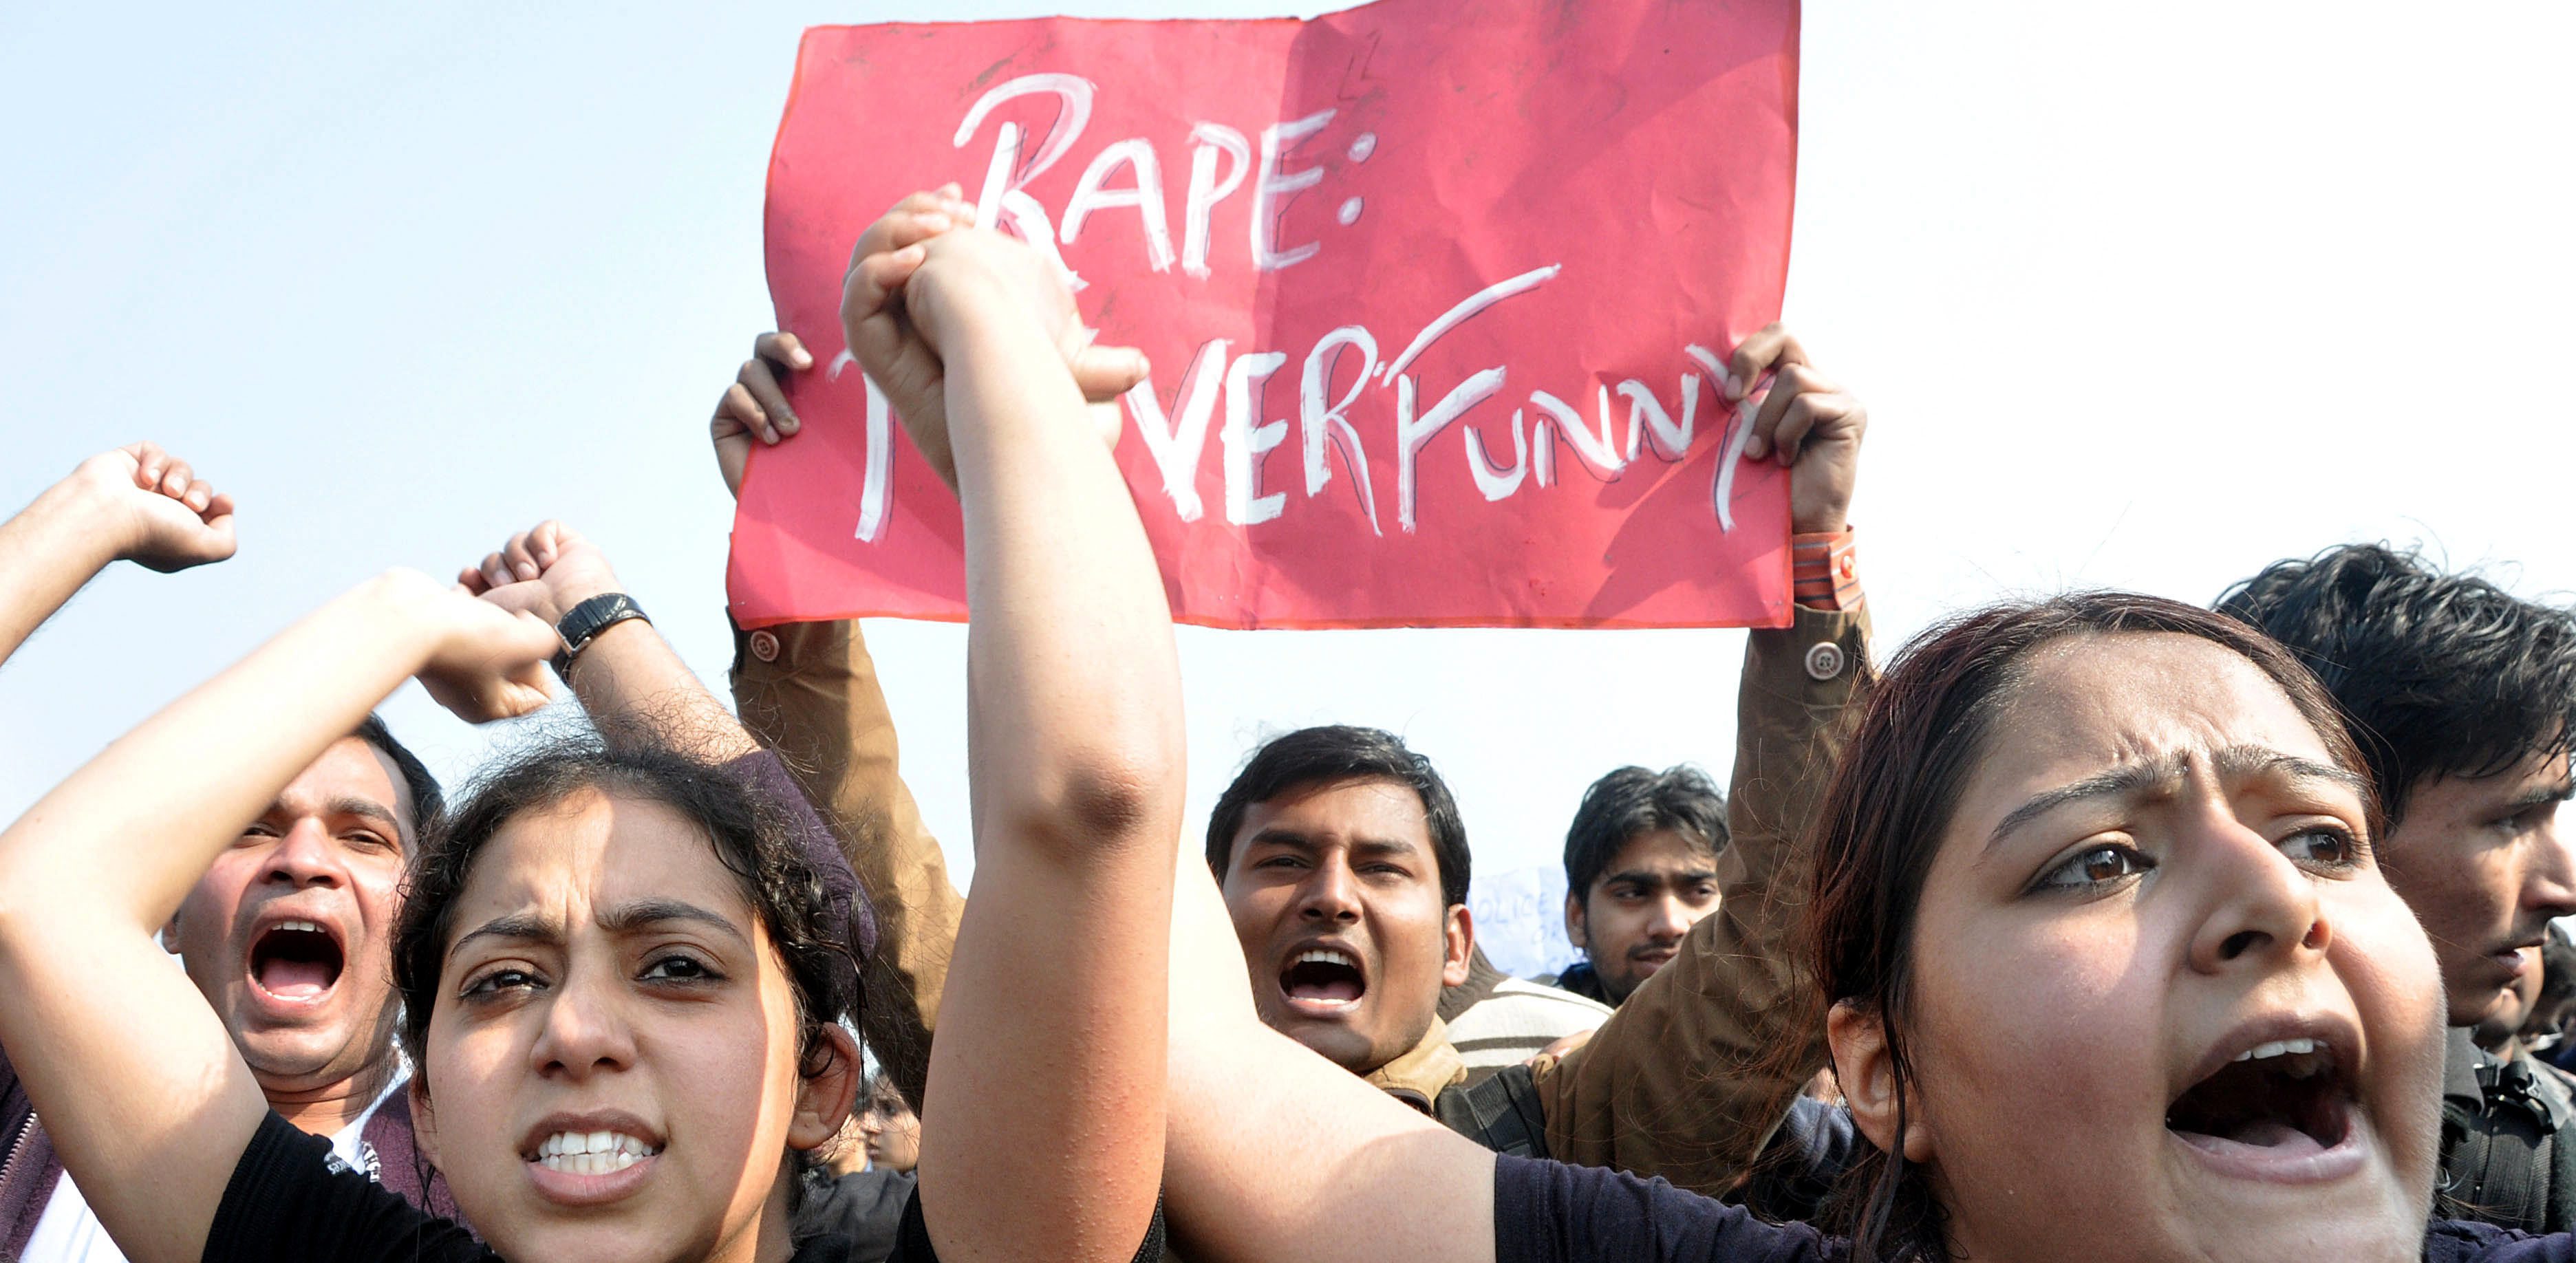 Κύμα οργής και διαδηλώσεις στην Ινδία μετά τον ομαδικό βιασμό νέας γυναίκας